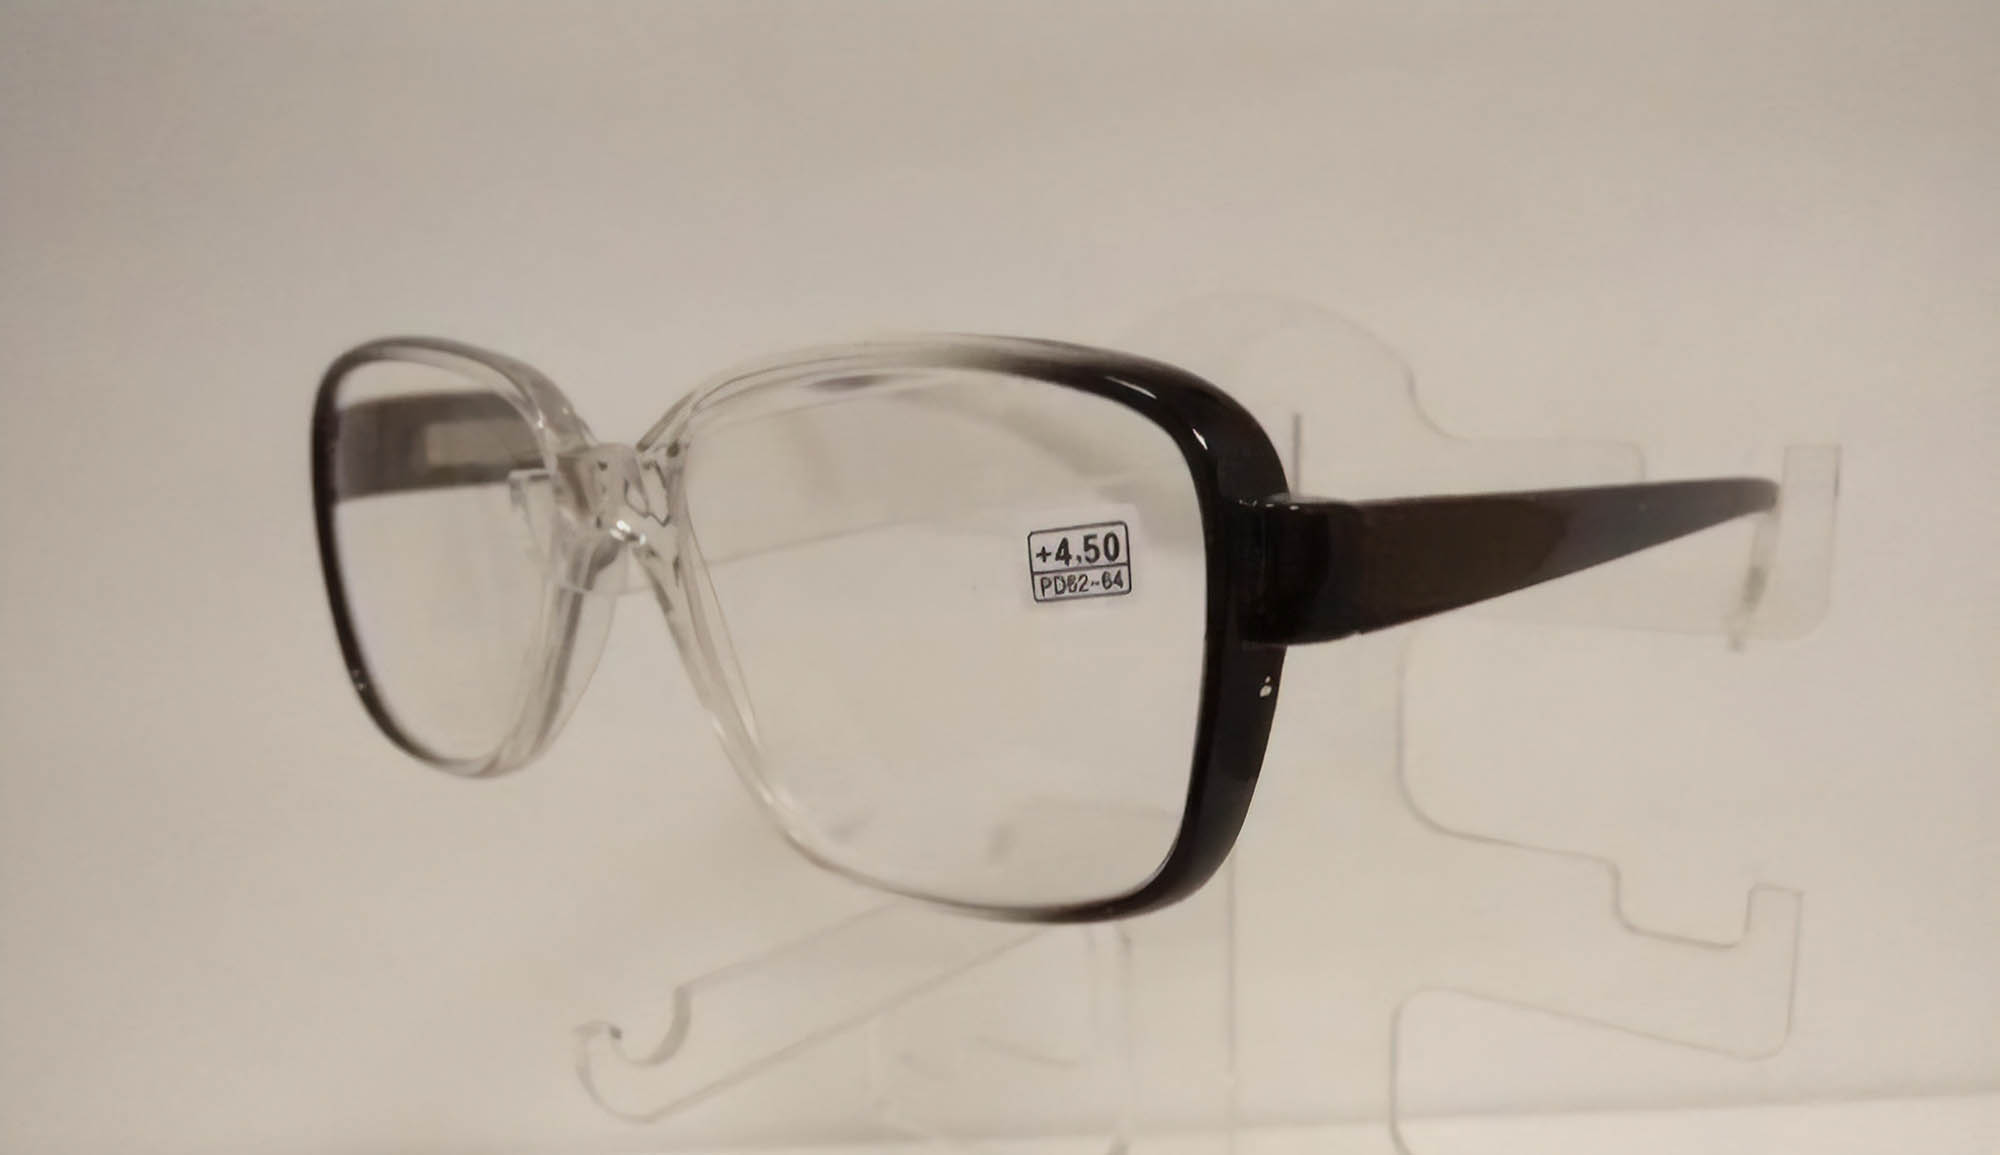 Рецепт на очки: что такое cyl и sph, сфера и целиндр, расшифровка бланка, как выписываются окуляры при астигматизмы